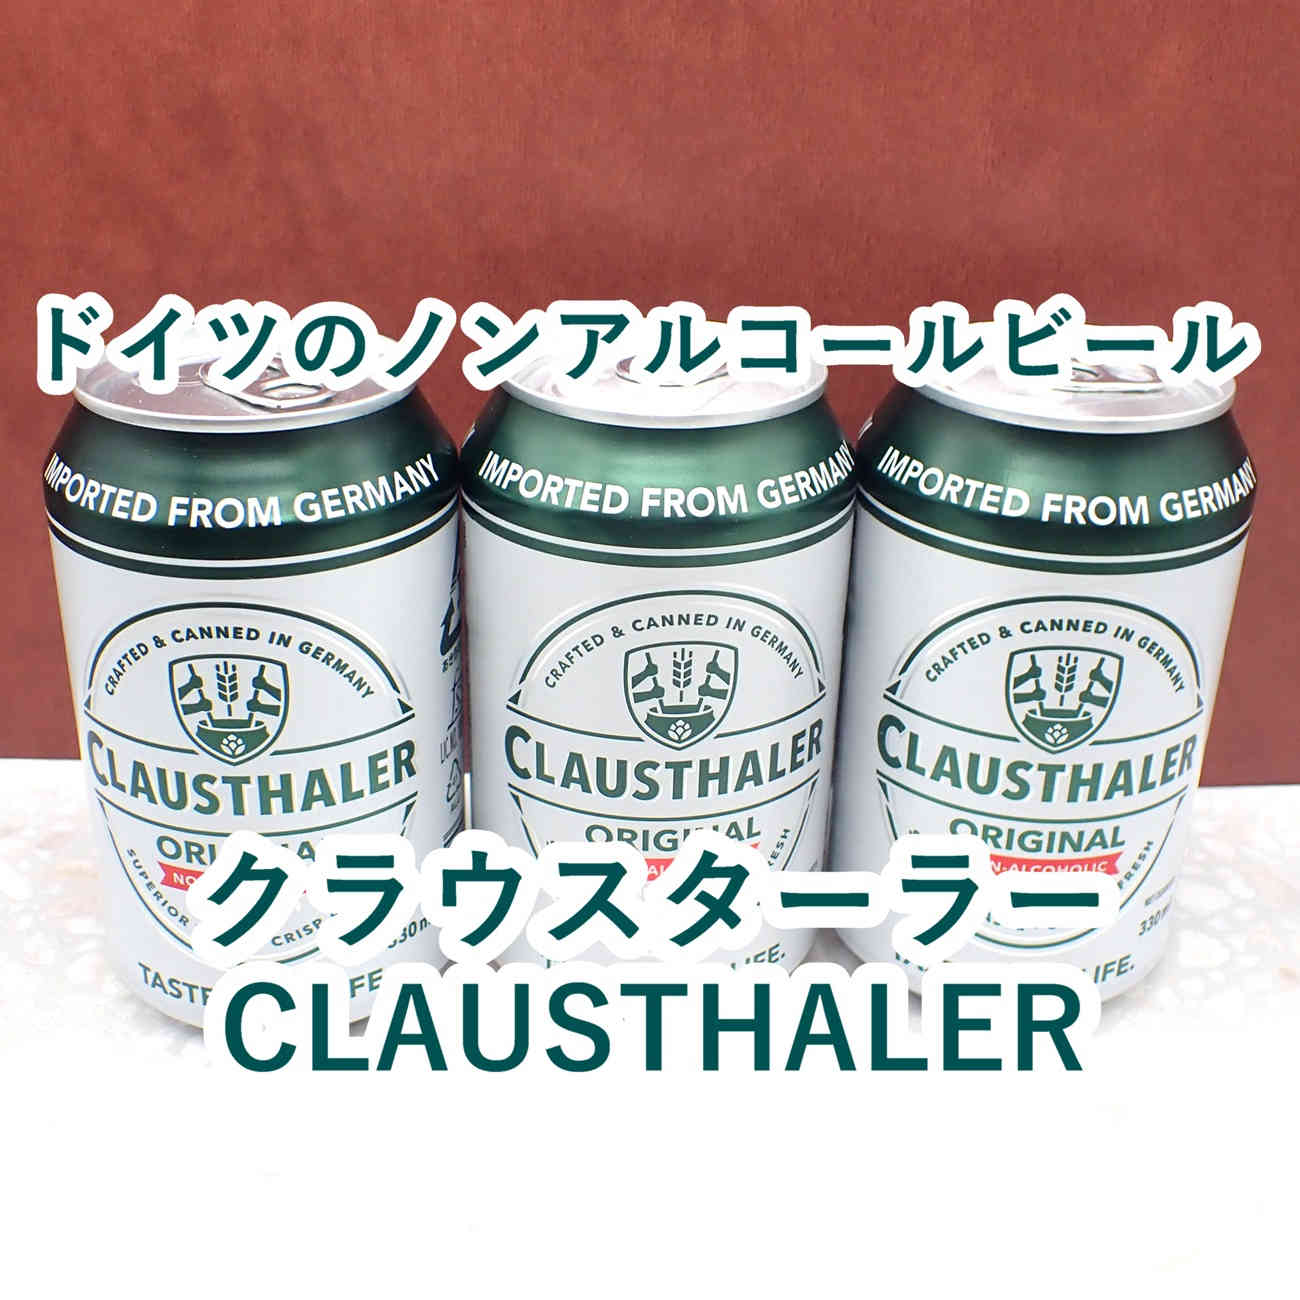 クラウスターラー CLAUSTHALERという名前のドイツ産のノンアルコールビールを飲んでみた感想レビューです。